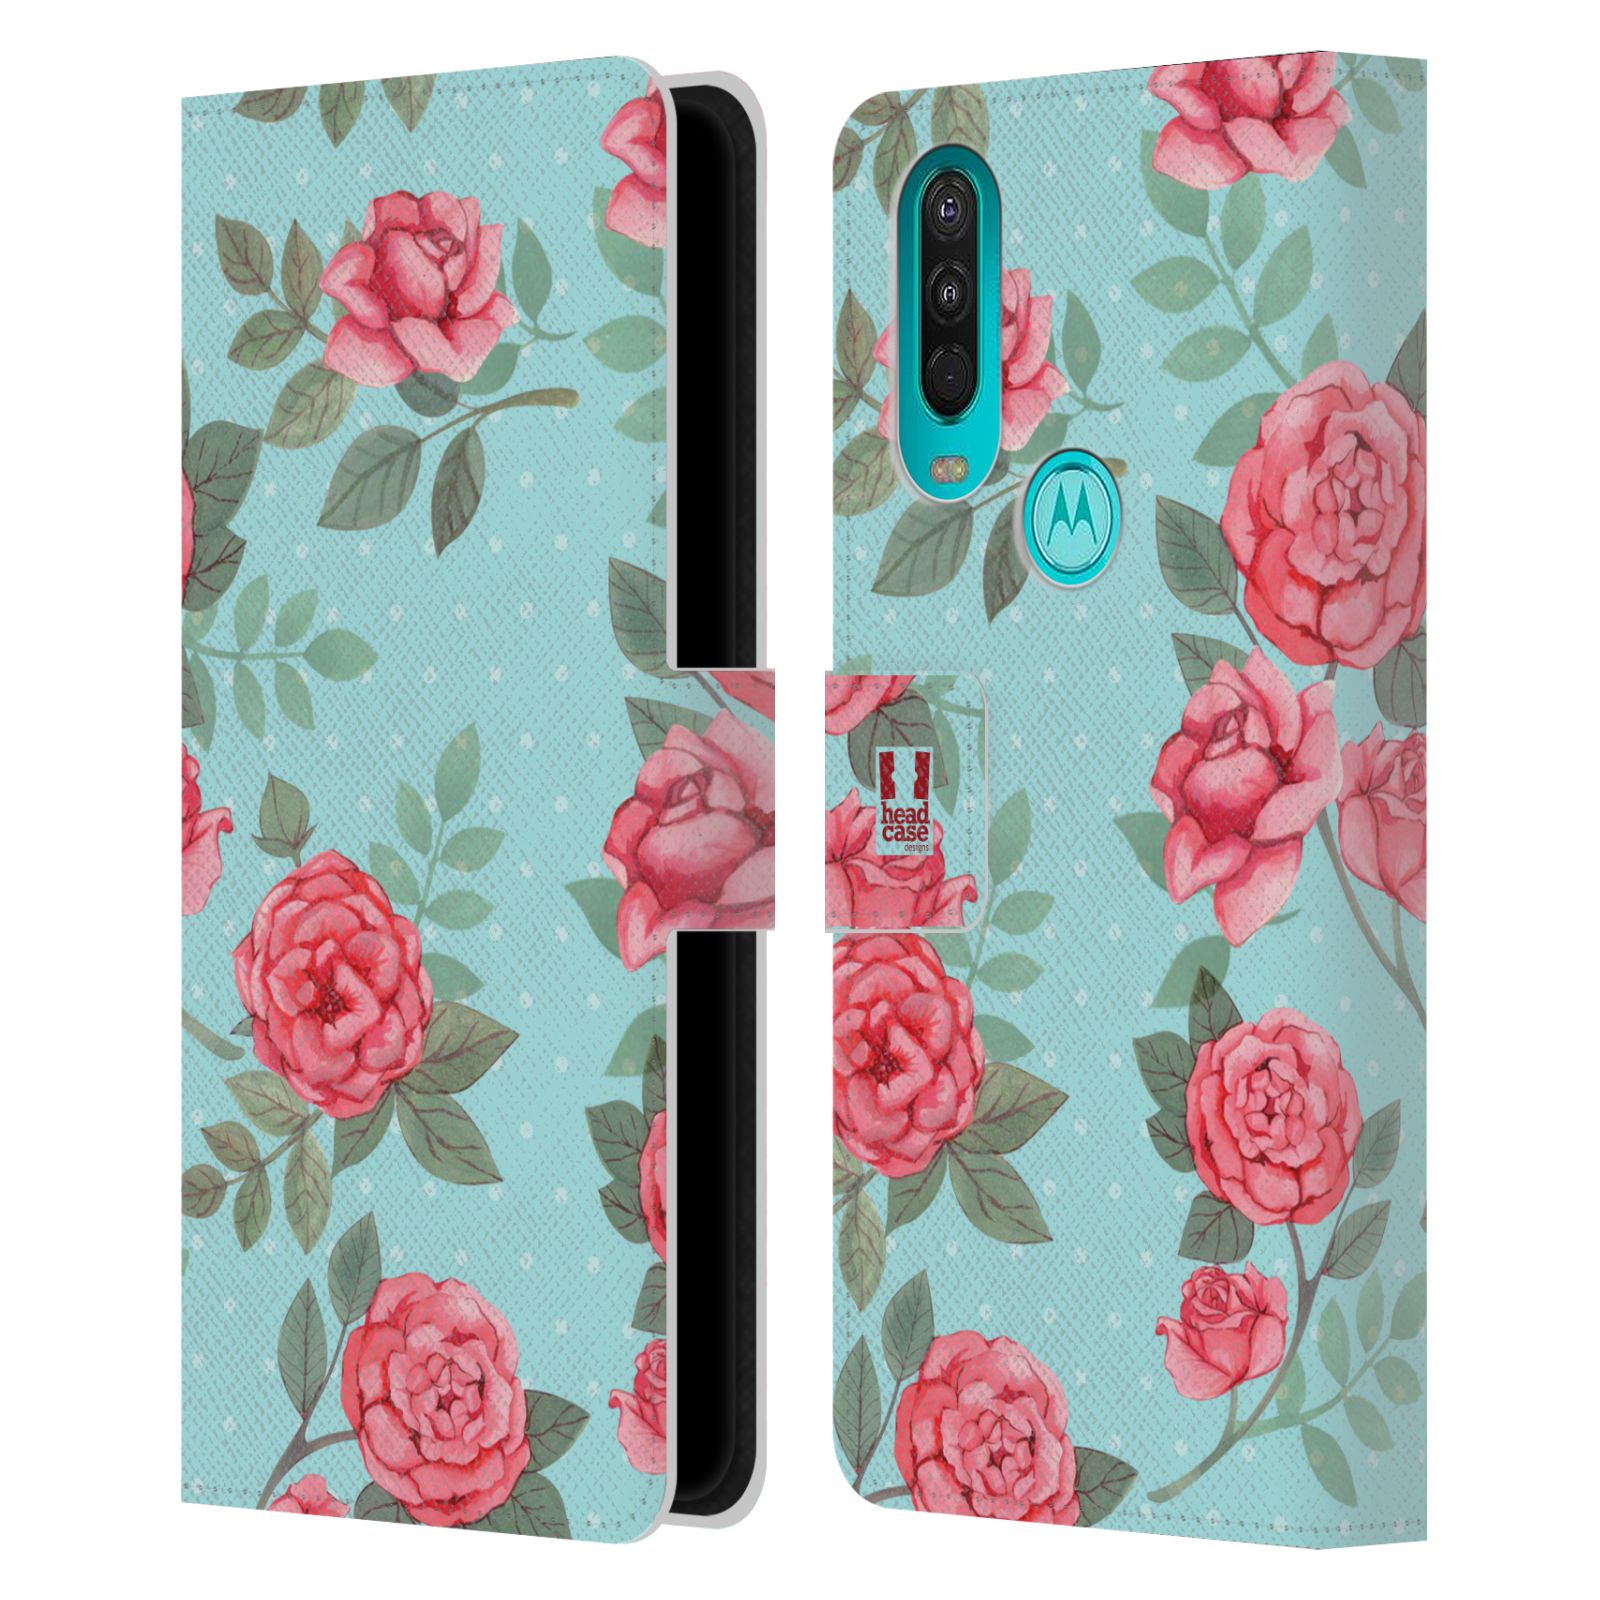 Pouzdro HEAD CASE na mobil Nokia 2.4 romantické květy velké růže modrá a růžová